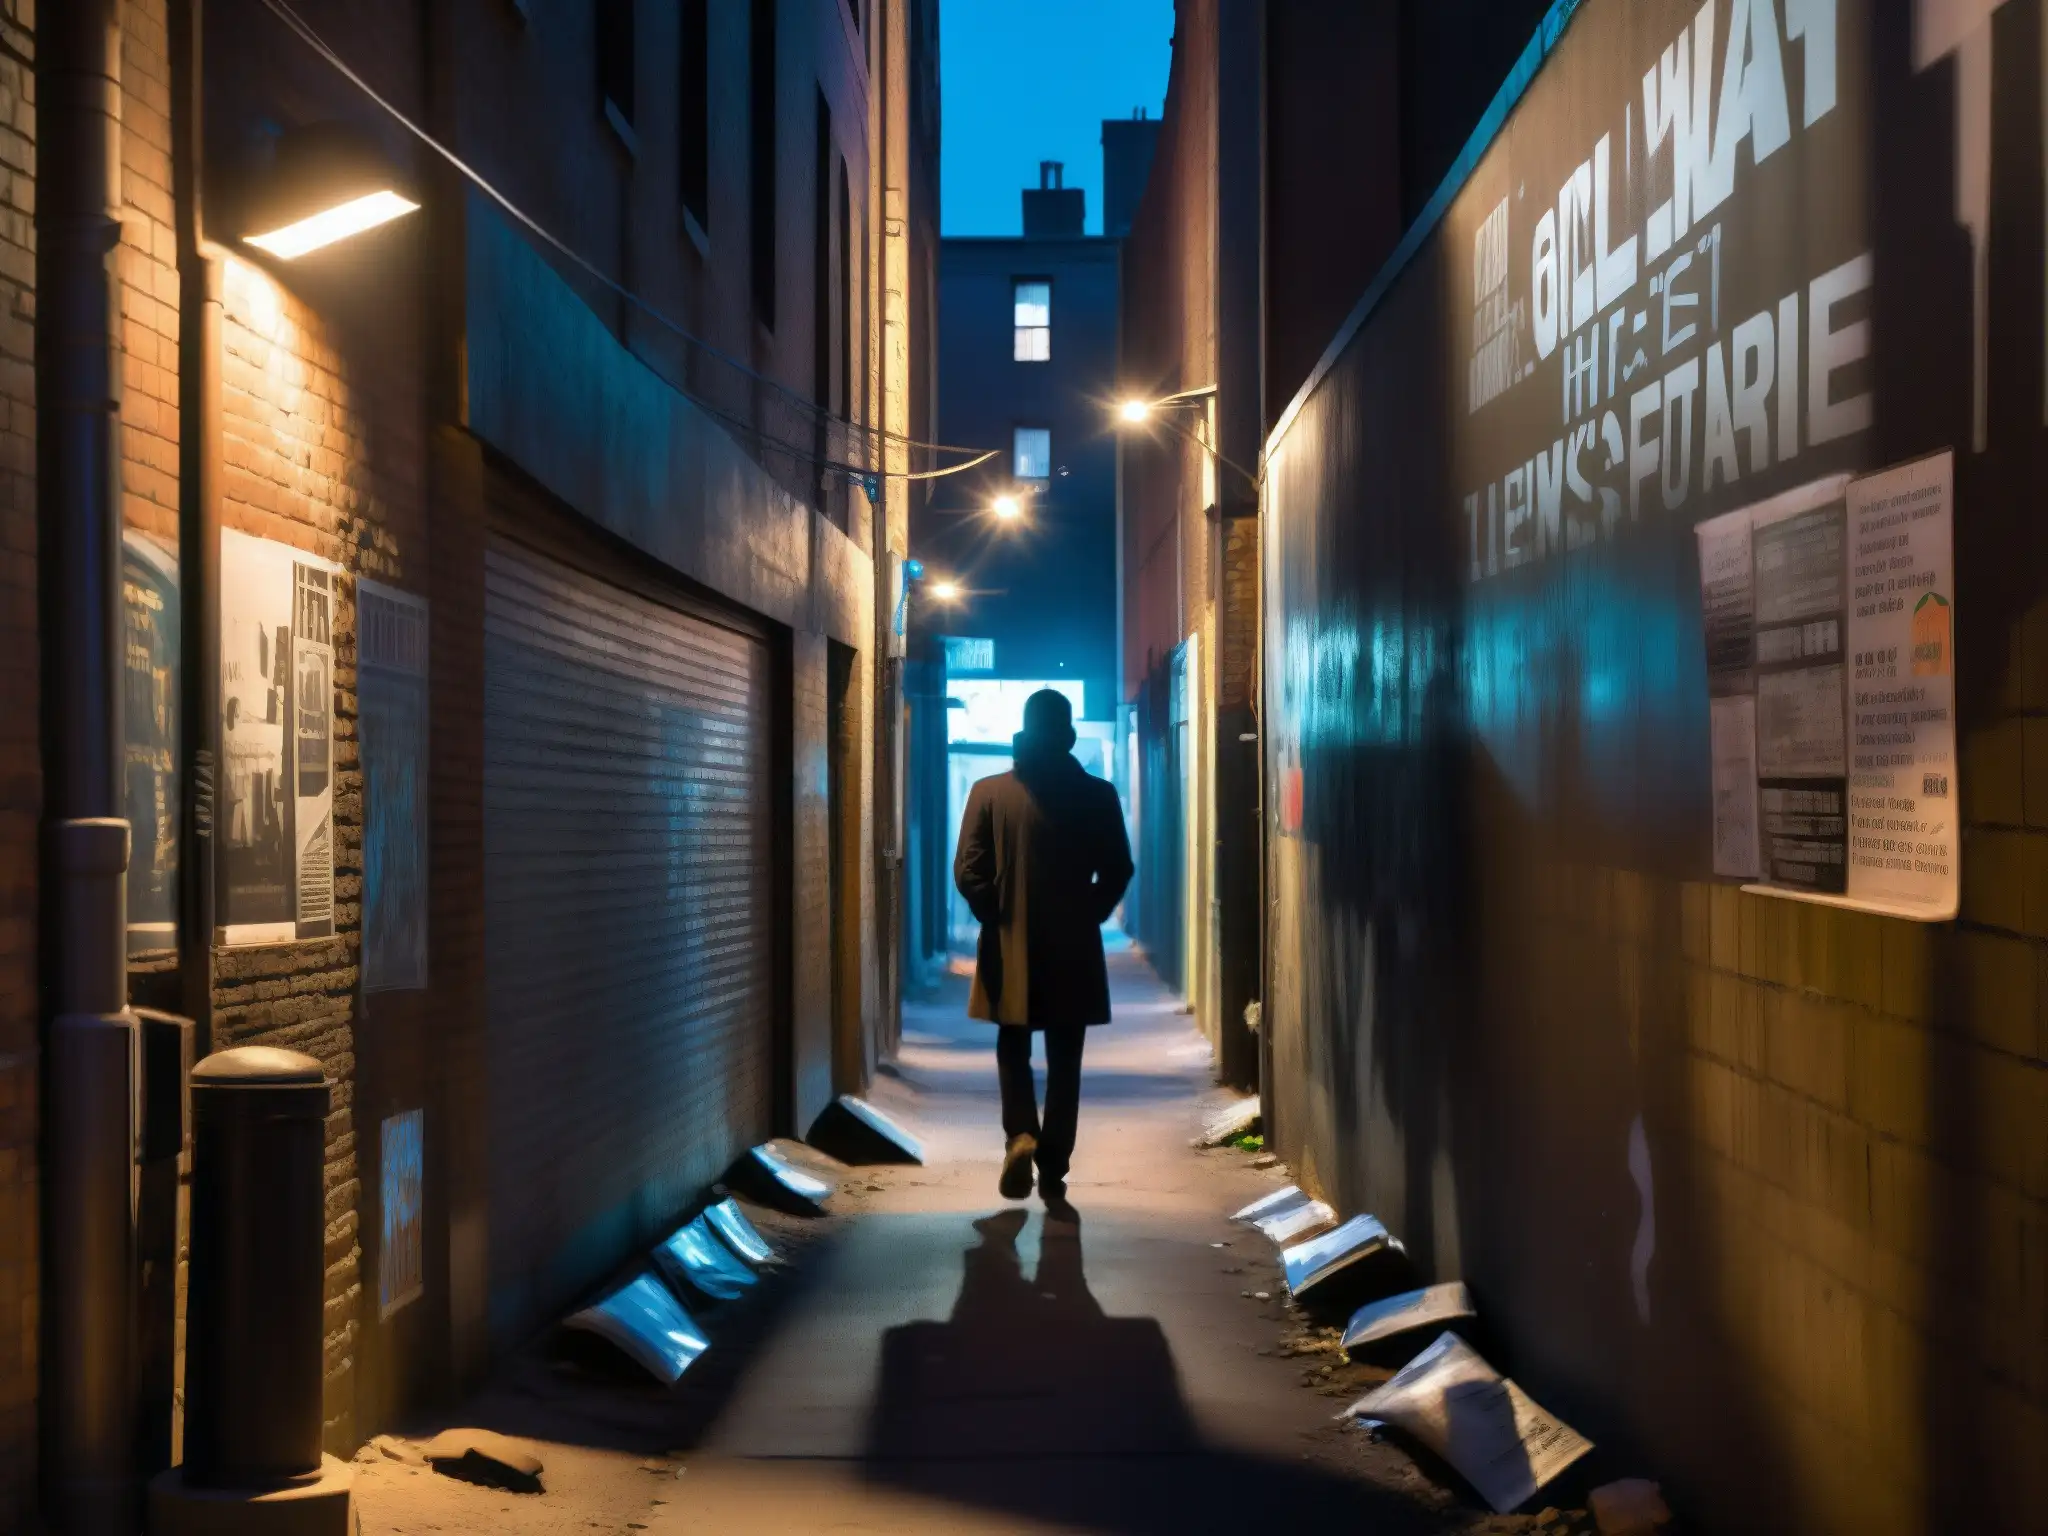 Un callejón urbano en penumbra, con grafitis en las paredes y una figura solitaria en la distancia, crea una atmósfera misteriosa